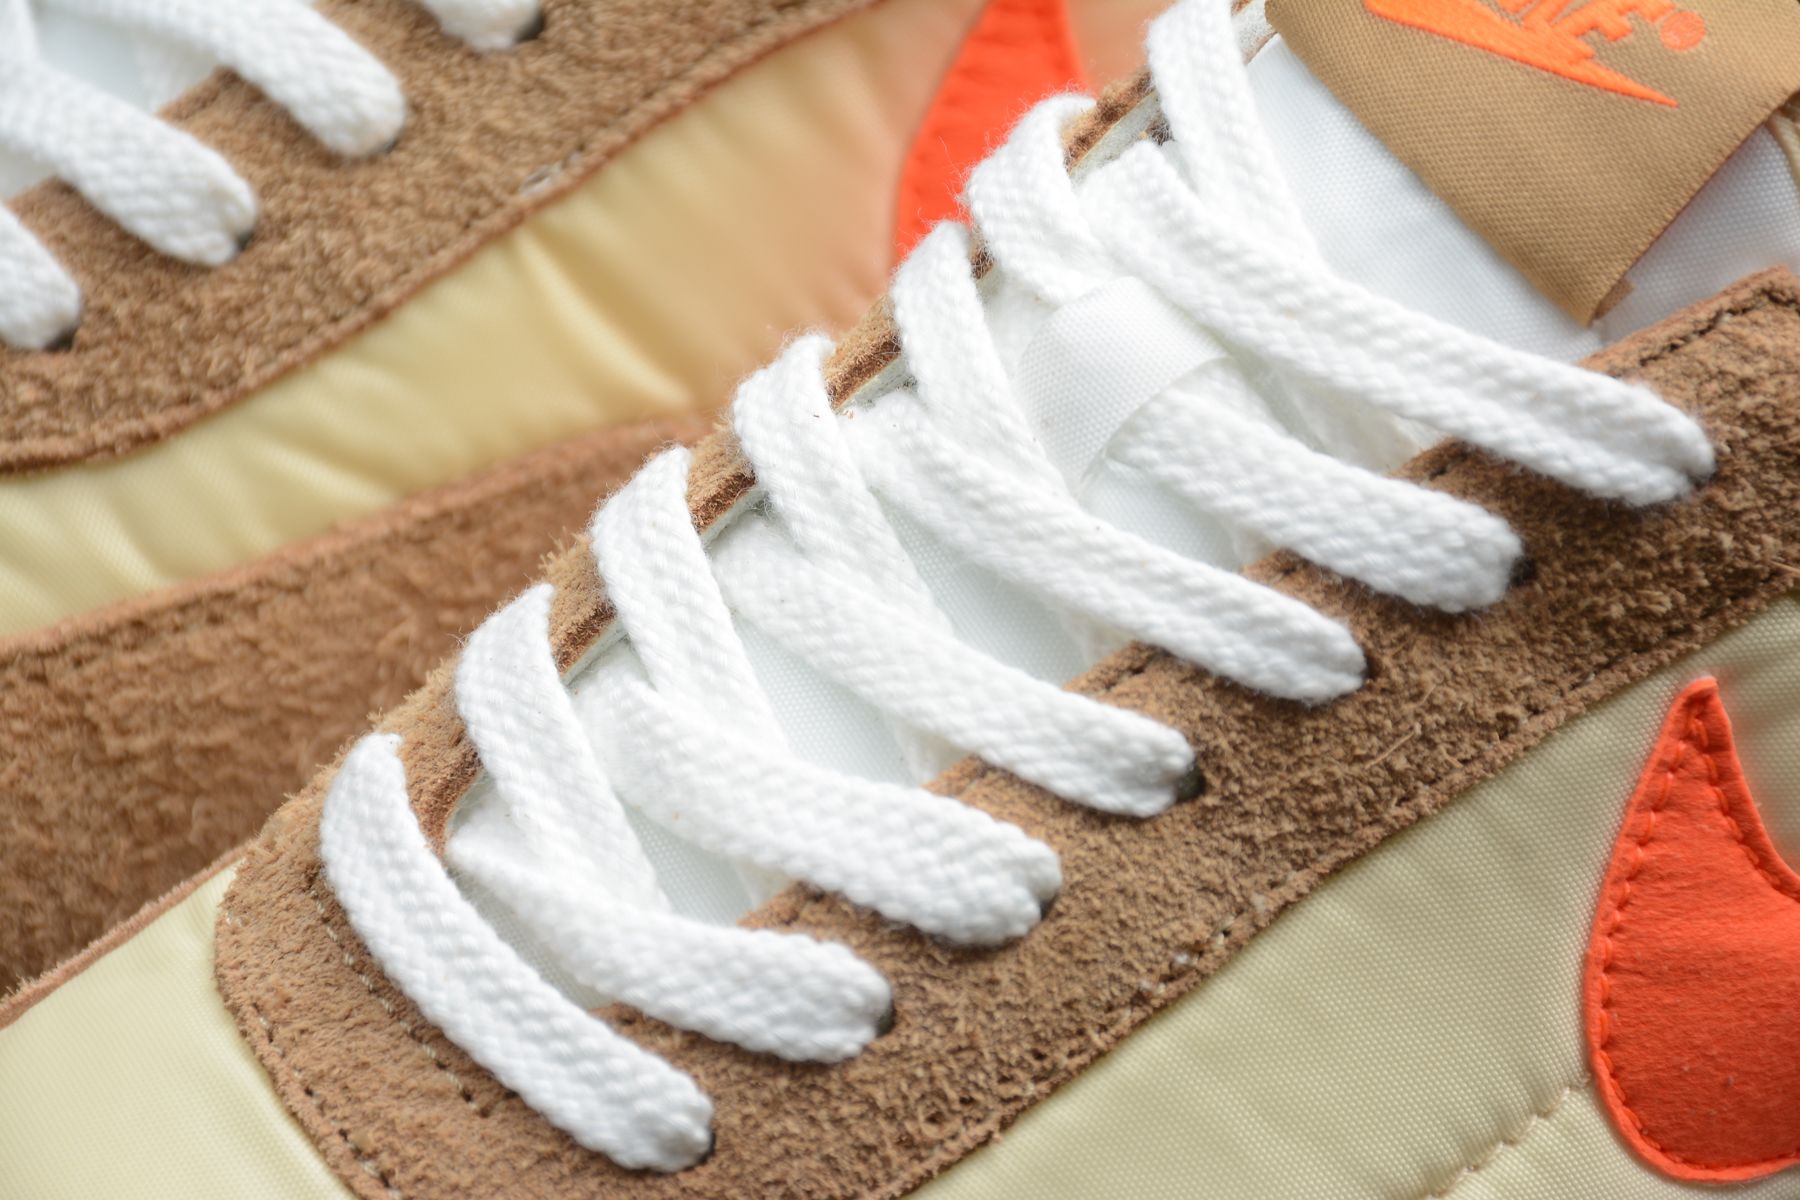 Nike Daybreak Orange Running Shoes running shoes